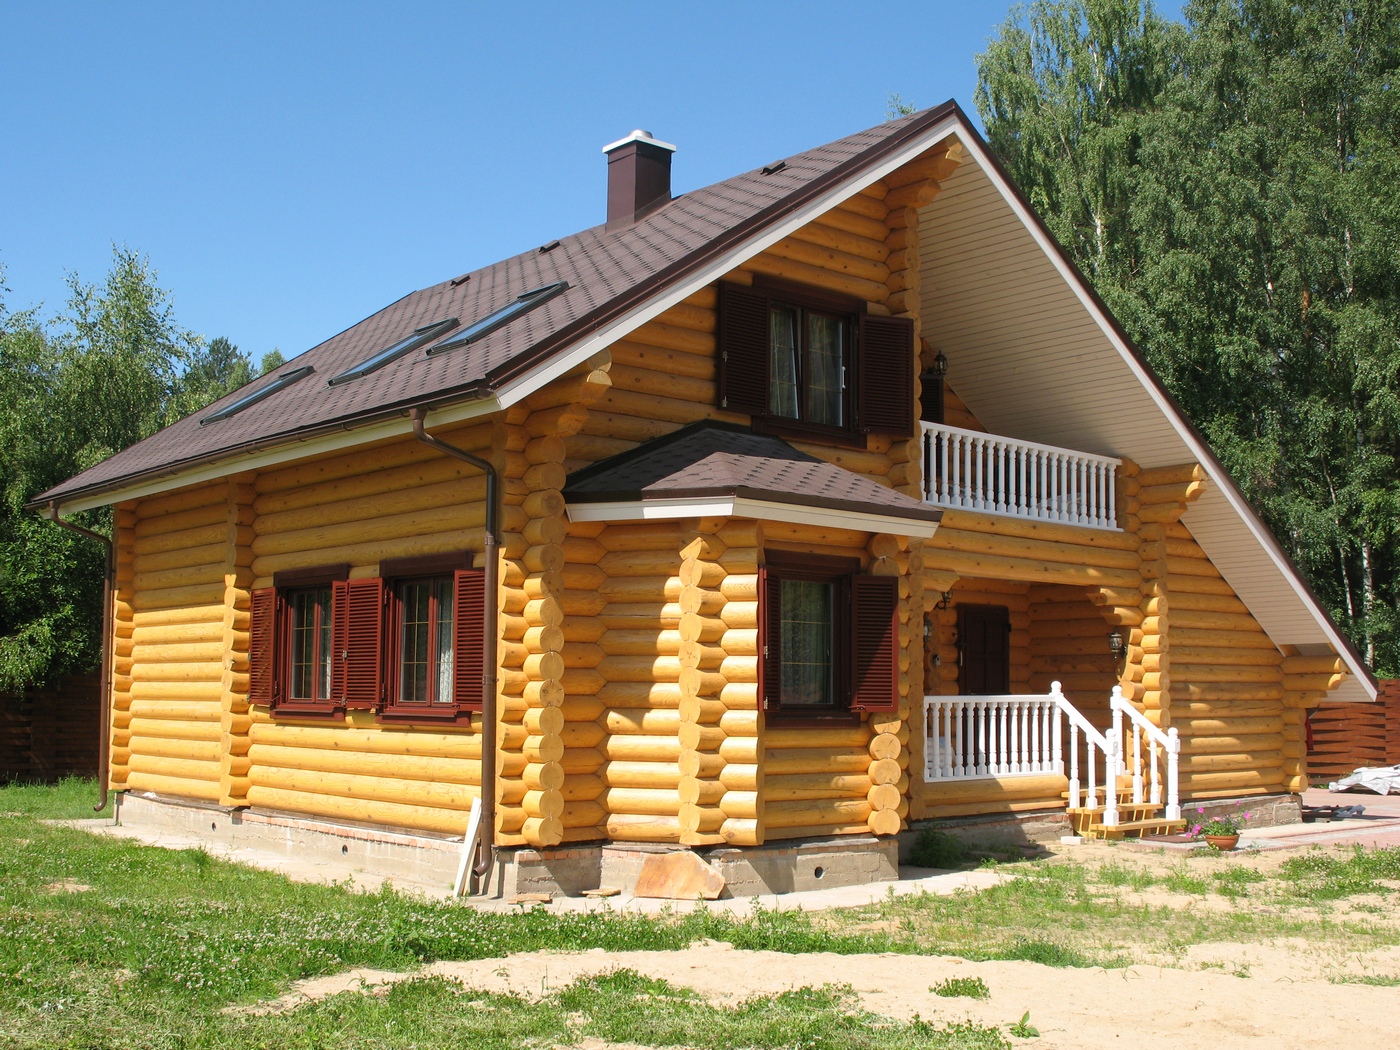 Строительство деревянных домов | Стройтехнология - запорная арматура .